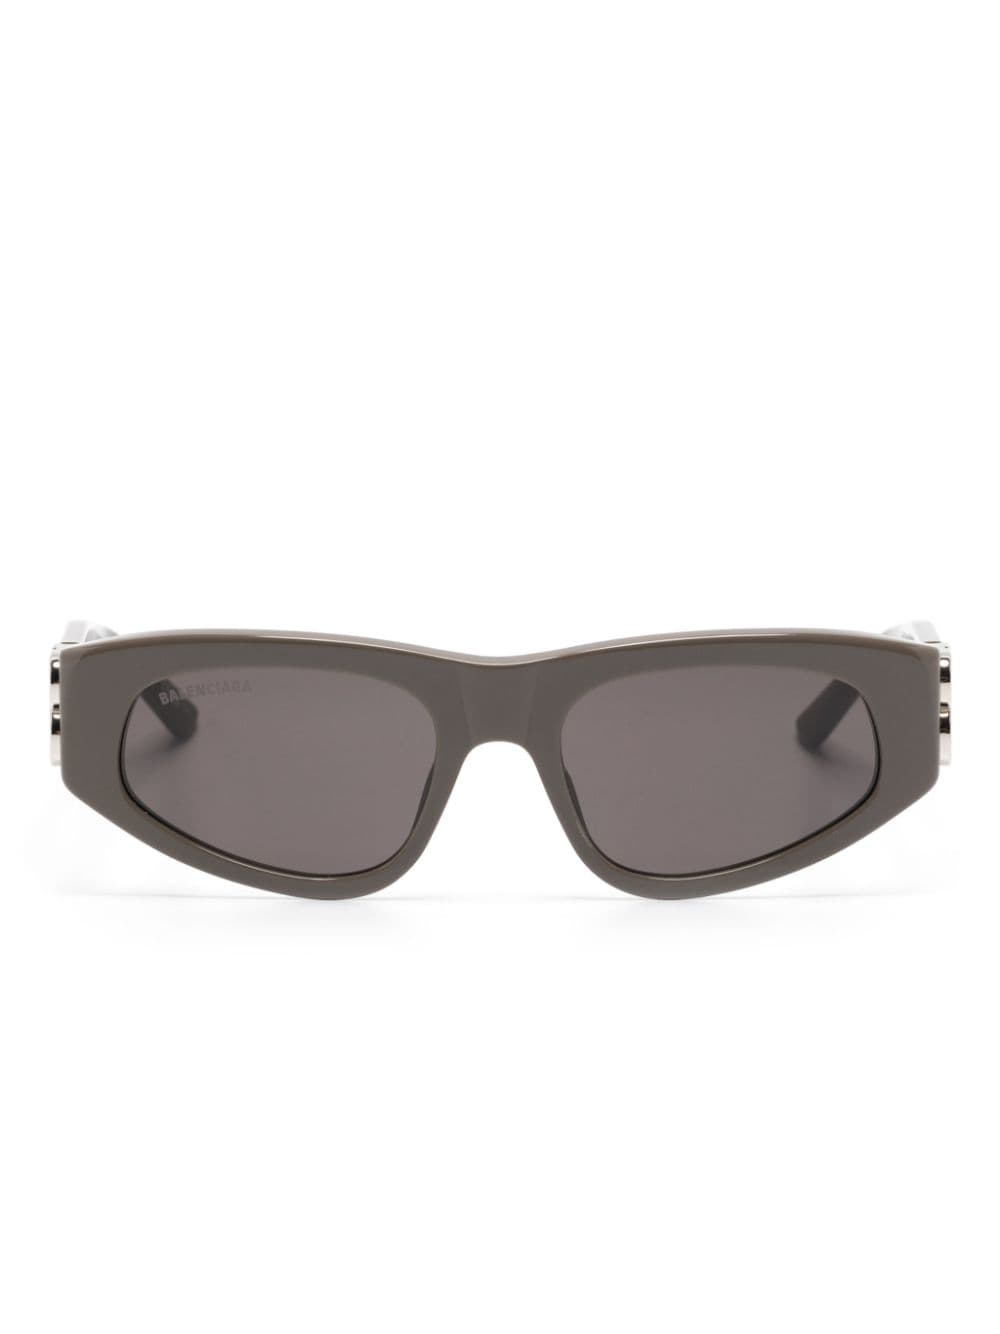 Balenciaga Eyewear Dynasty D-frame sunglasses - Brown von Balenciaga Eyewear